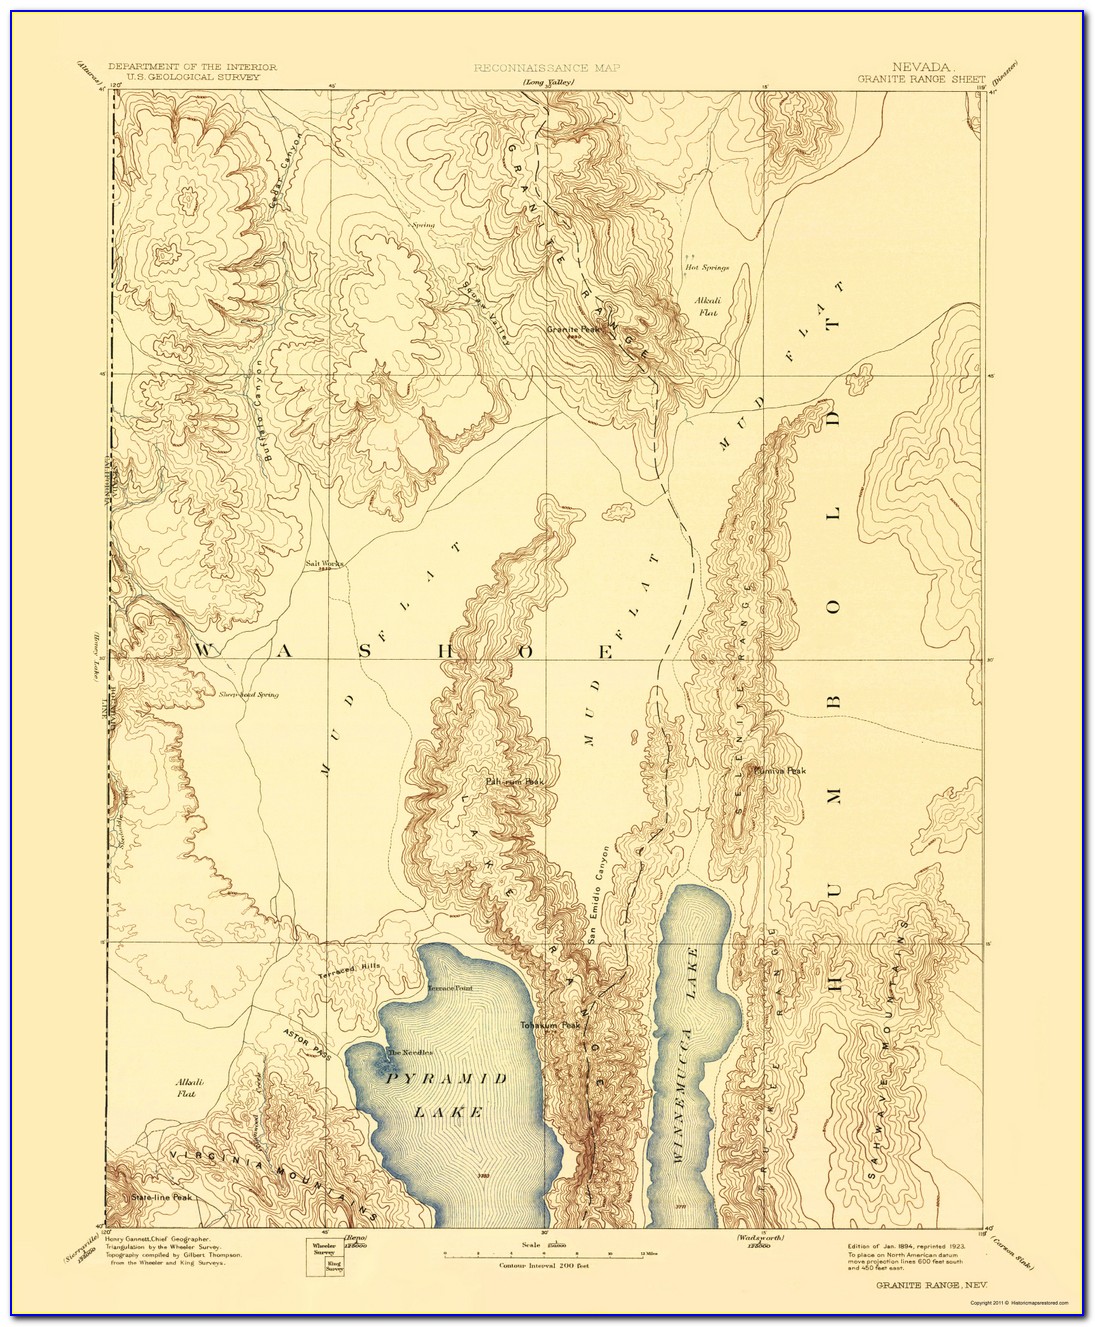 Nevada Topo Maps Free